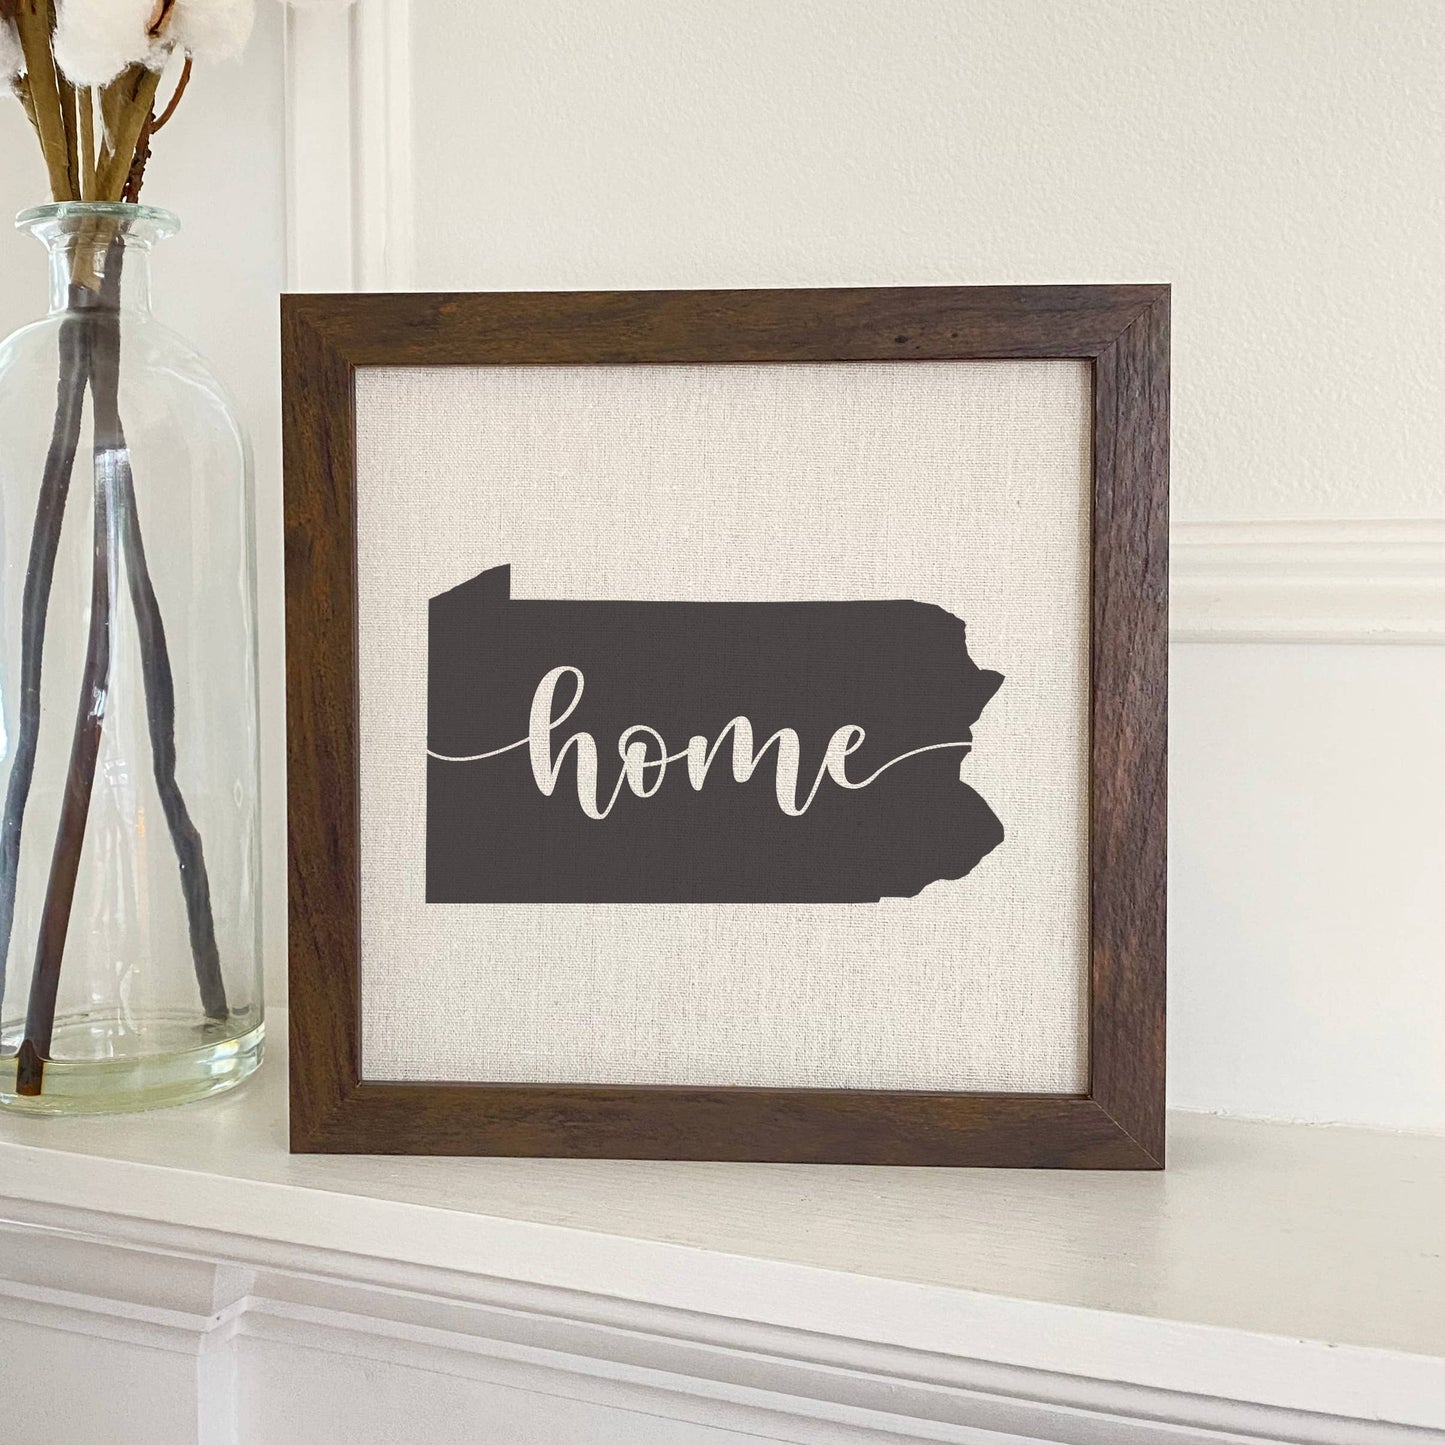 Washington State Art (Home) - Custom Framed Sign